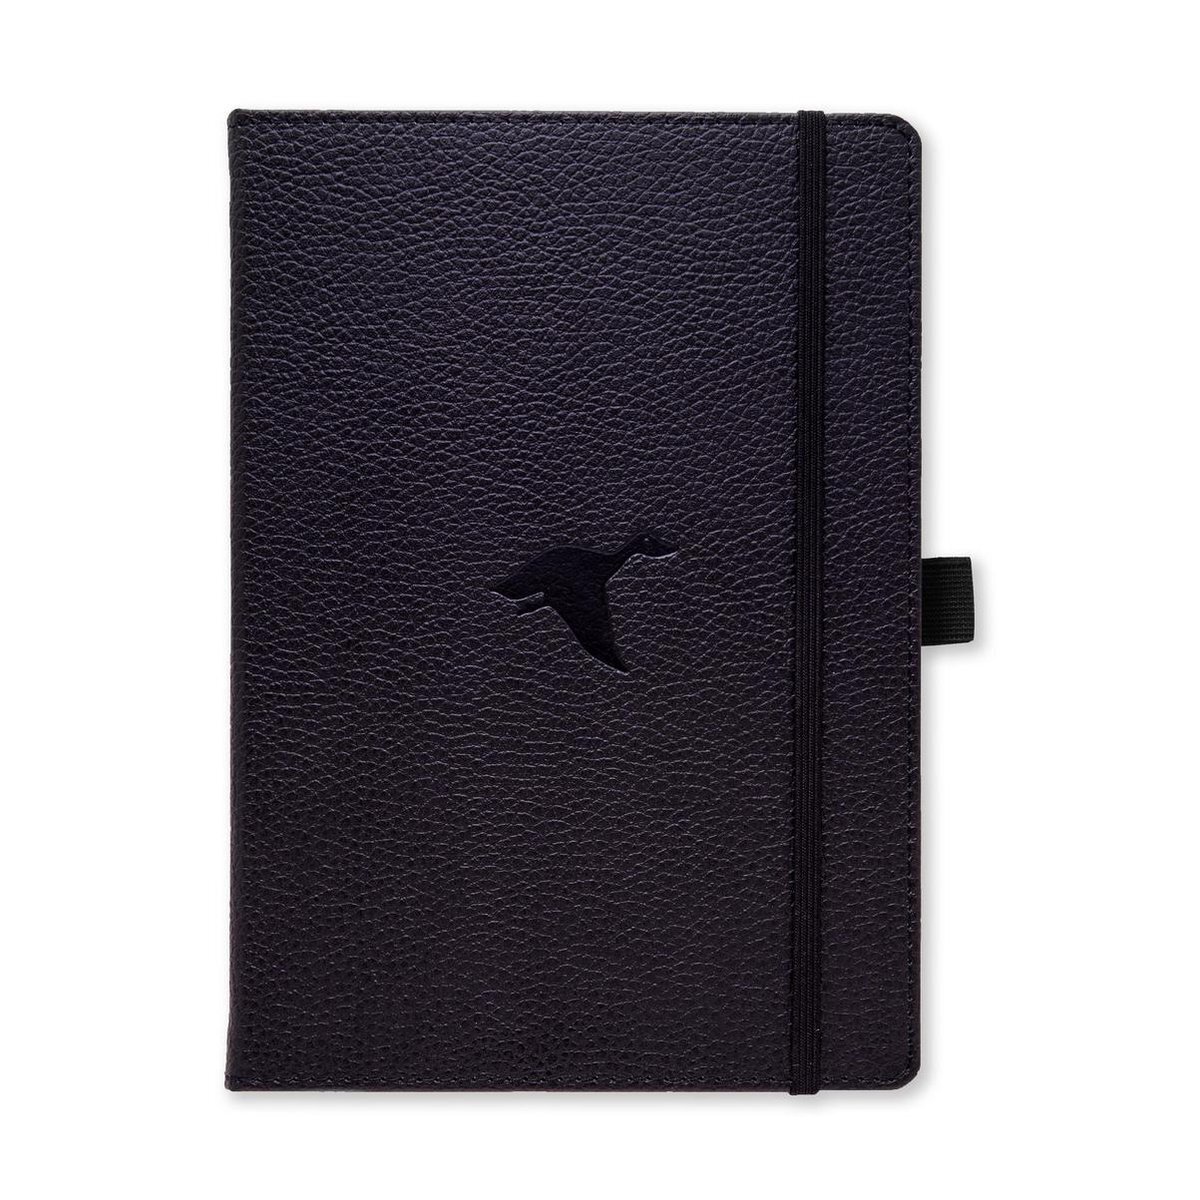 Dingbats Notebooks Dingbats A5+ Wildlife Black Duck Notebook - Dotted